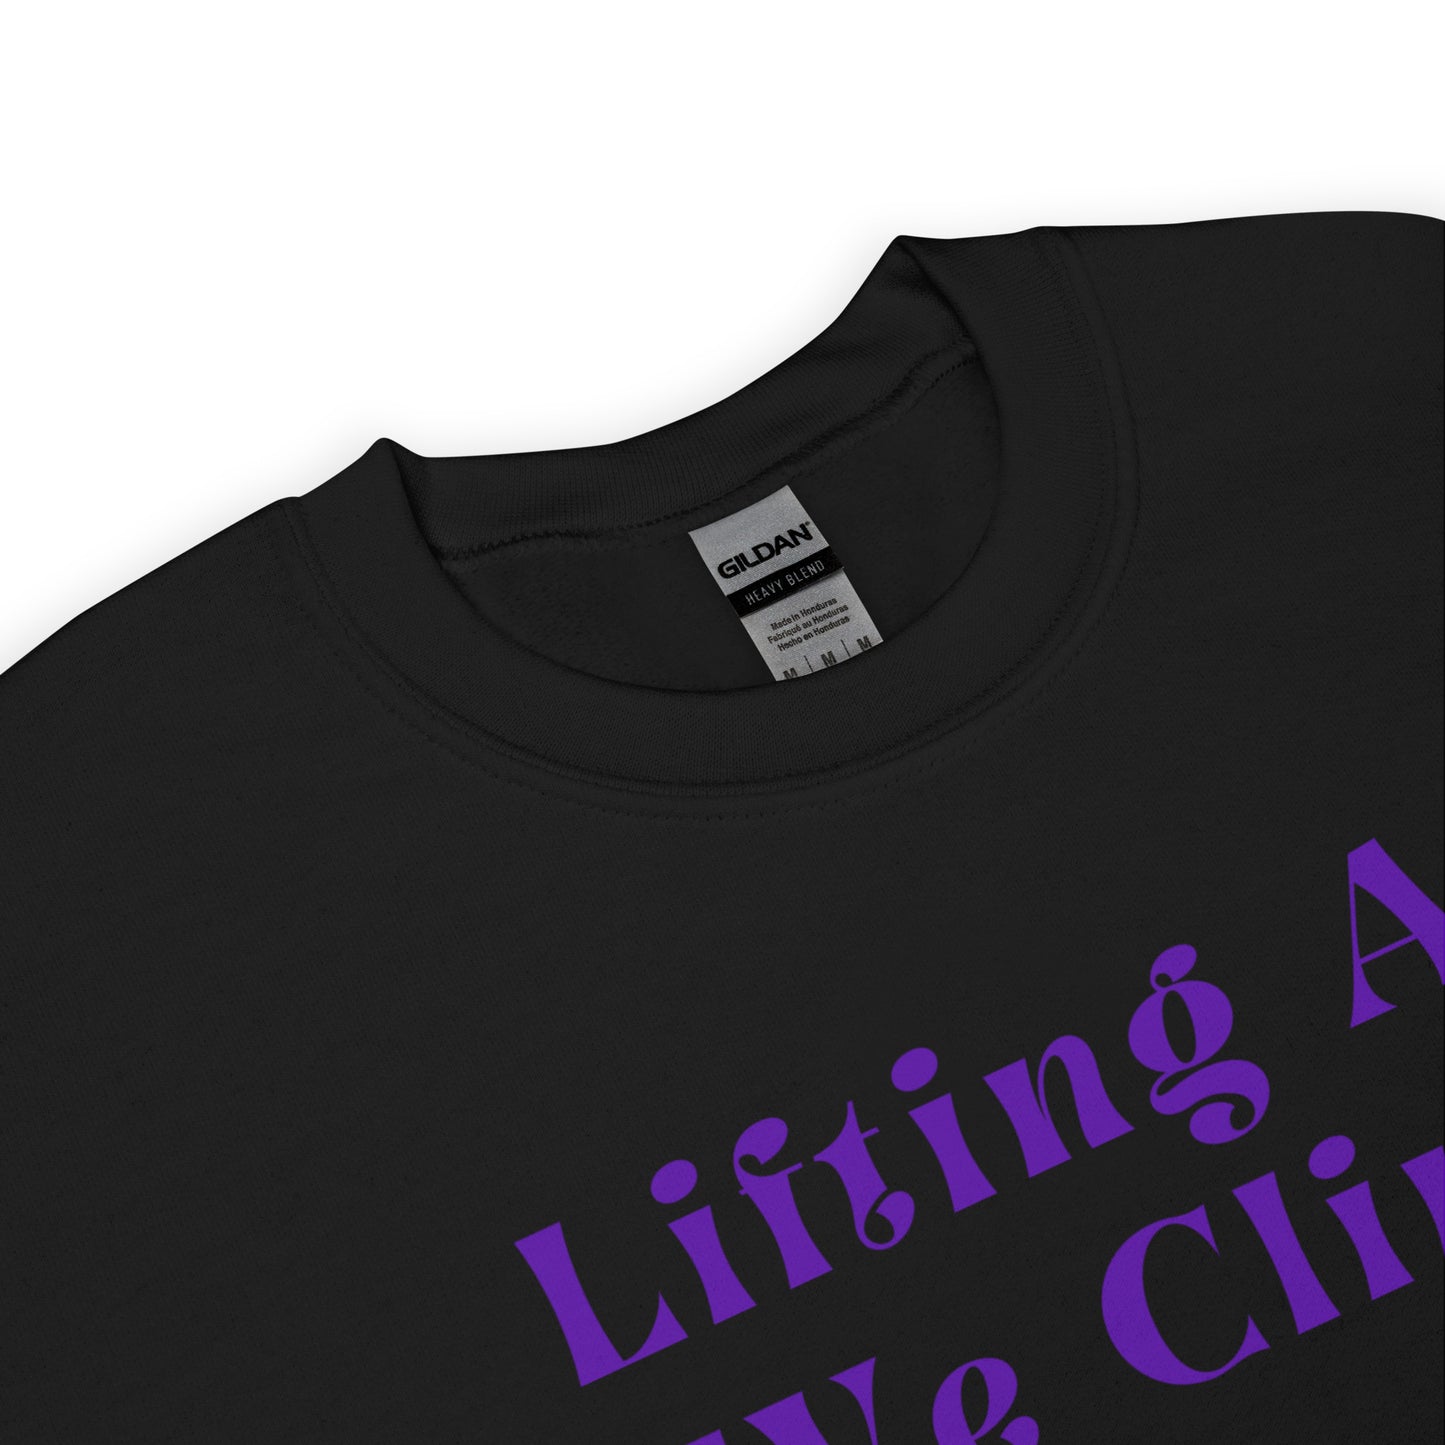 Lifting as We Climb T-Shirt